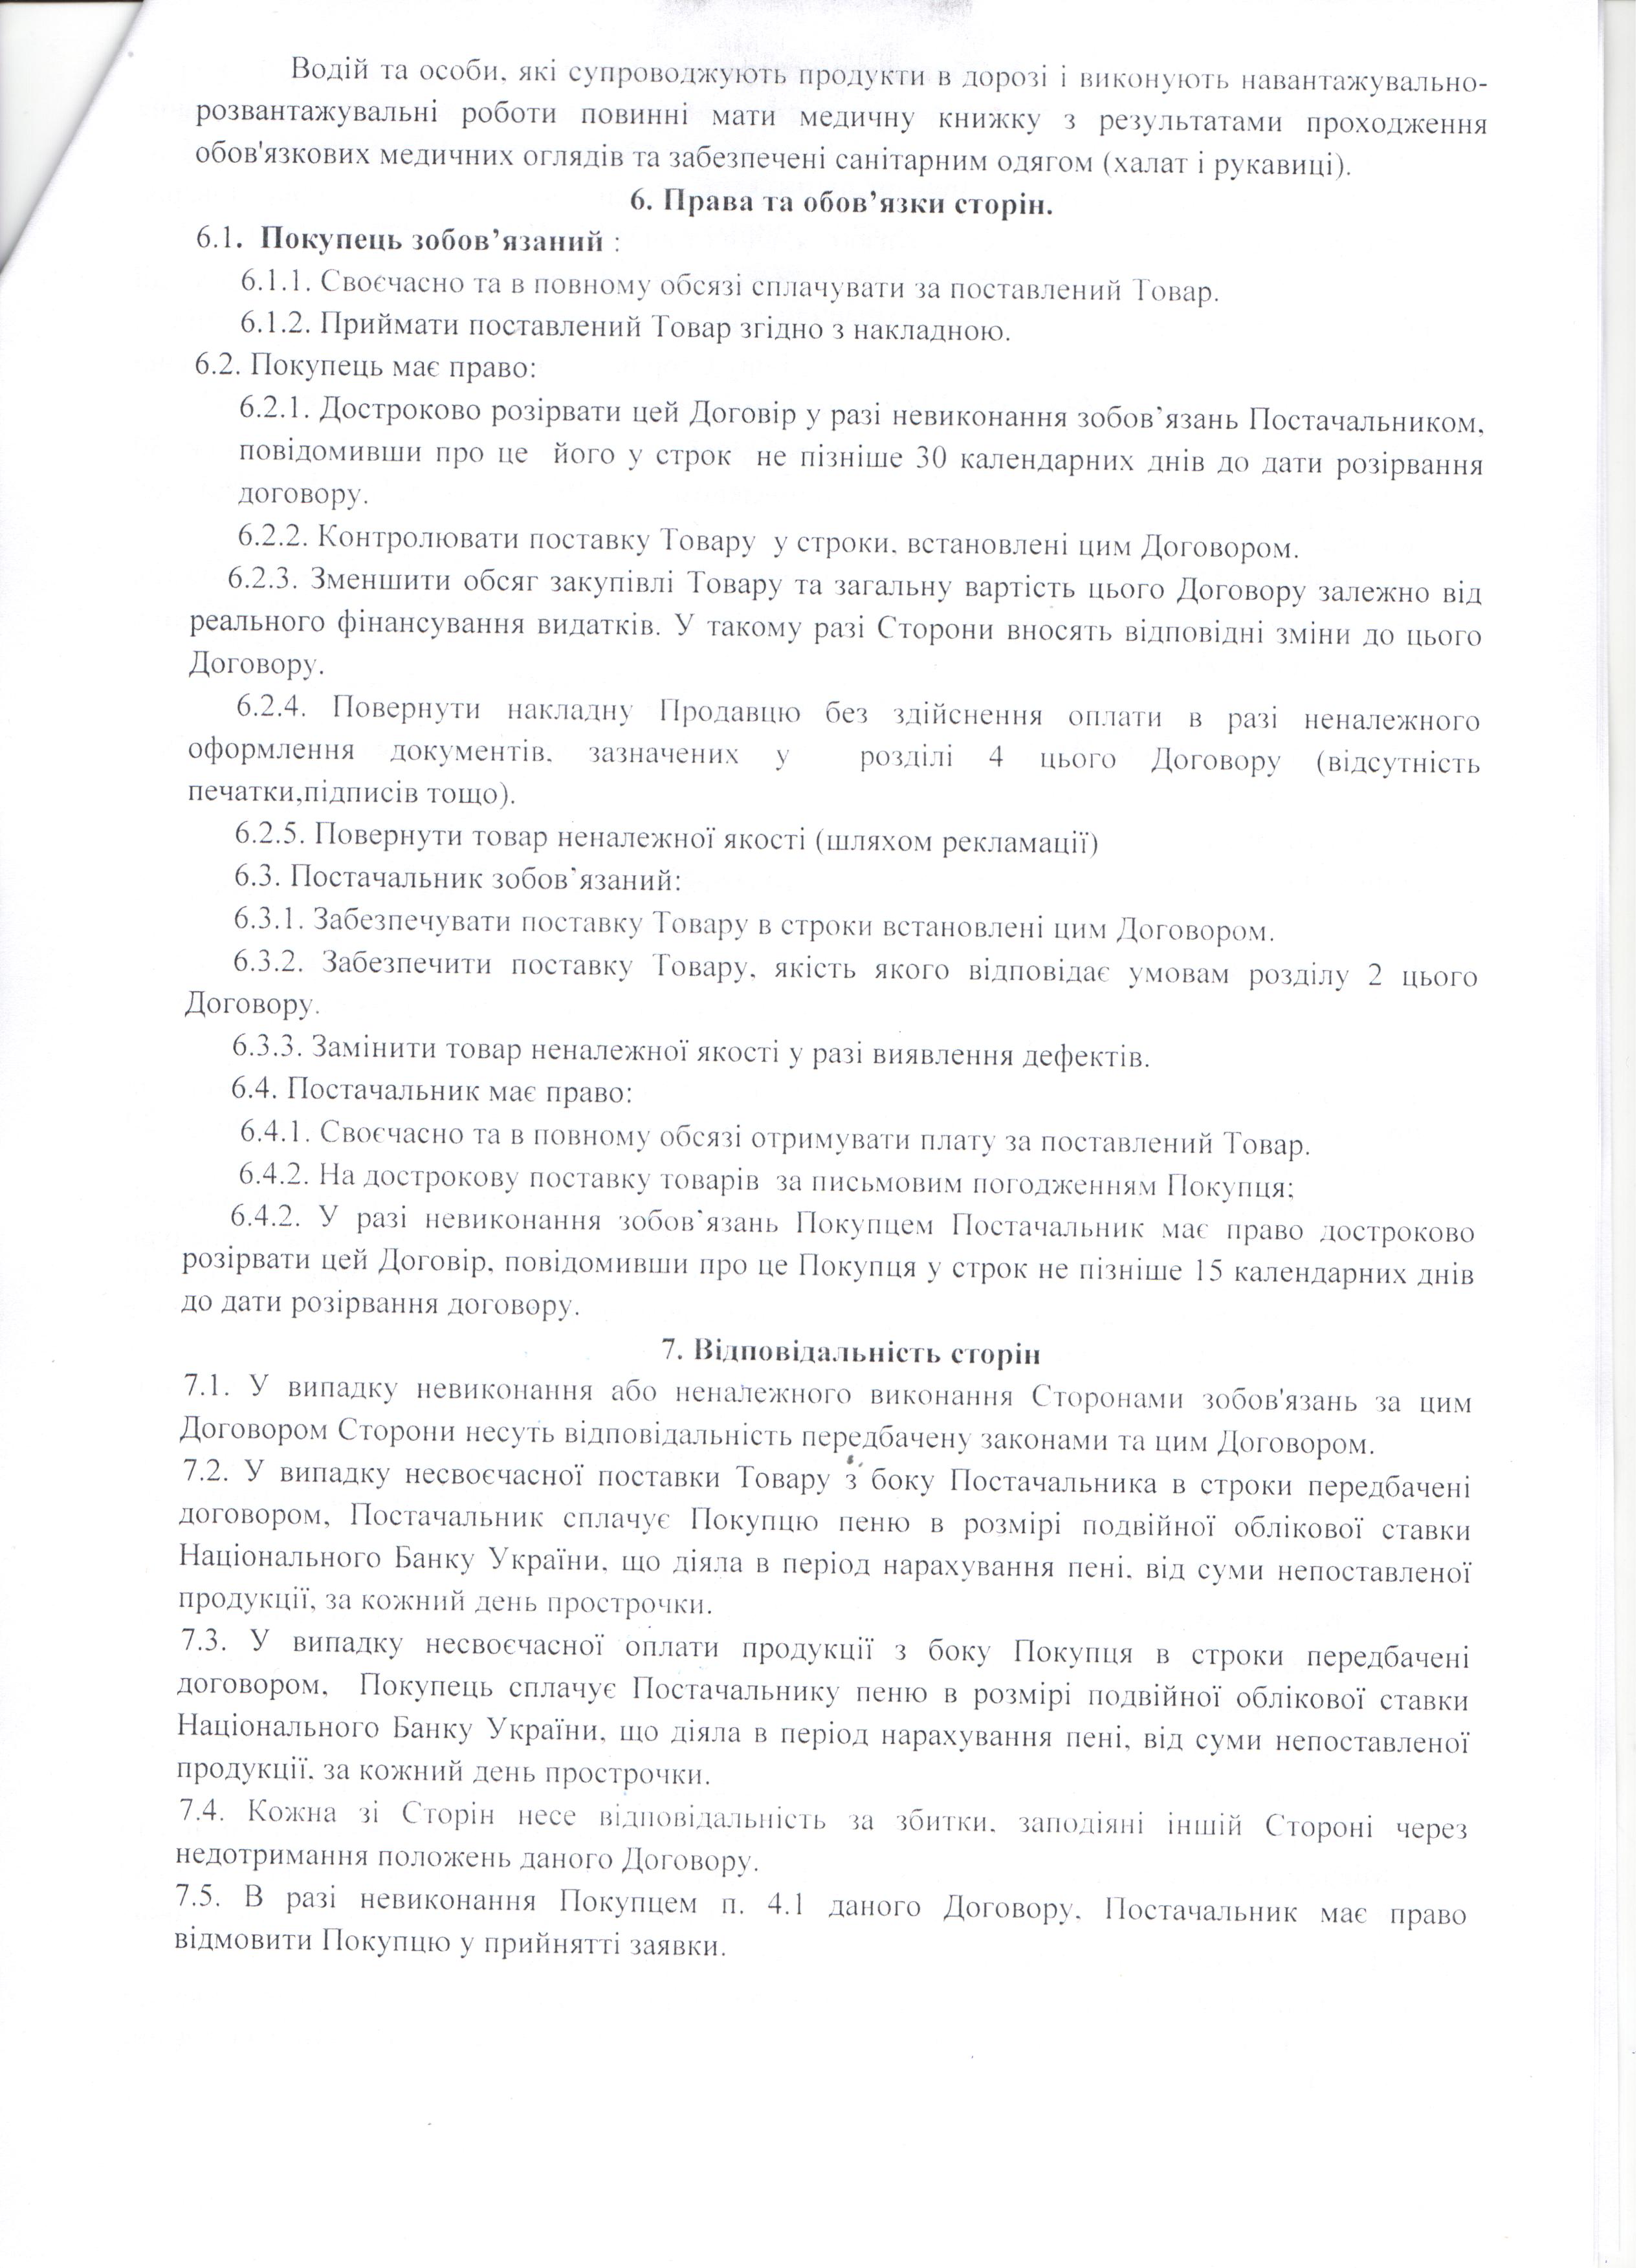 Договір №114 (3) від 07.09.2021 р.